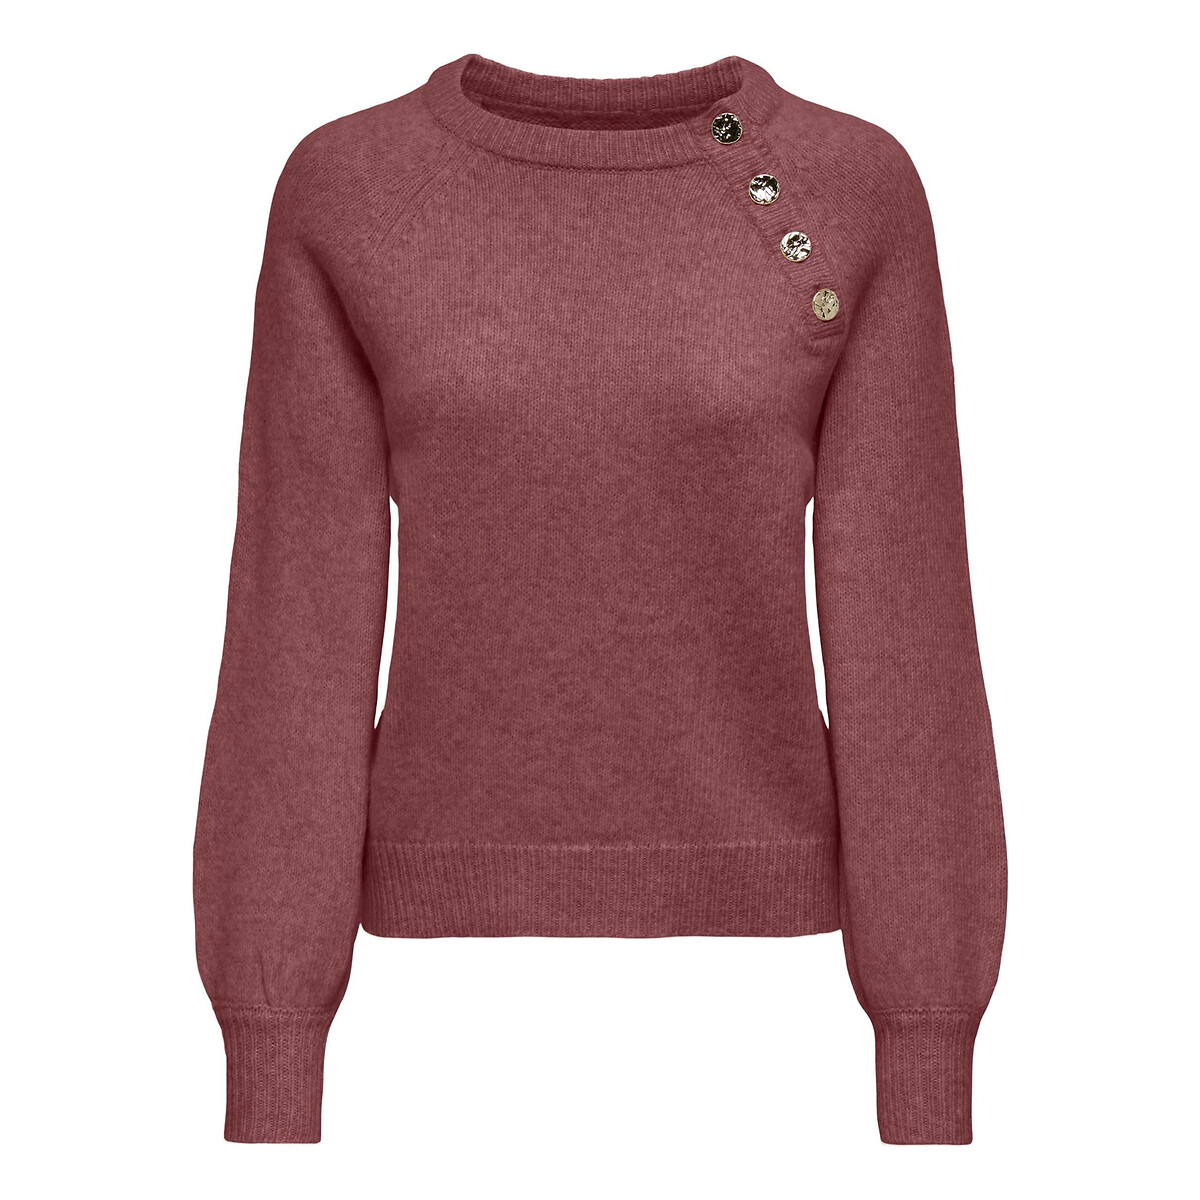 Пуловер из пышного трикотажа вставка из пуговиц XL розовый